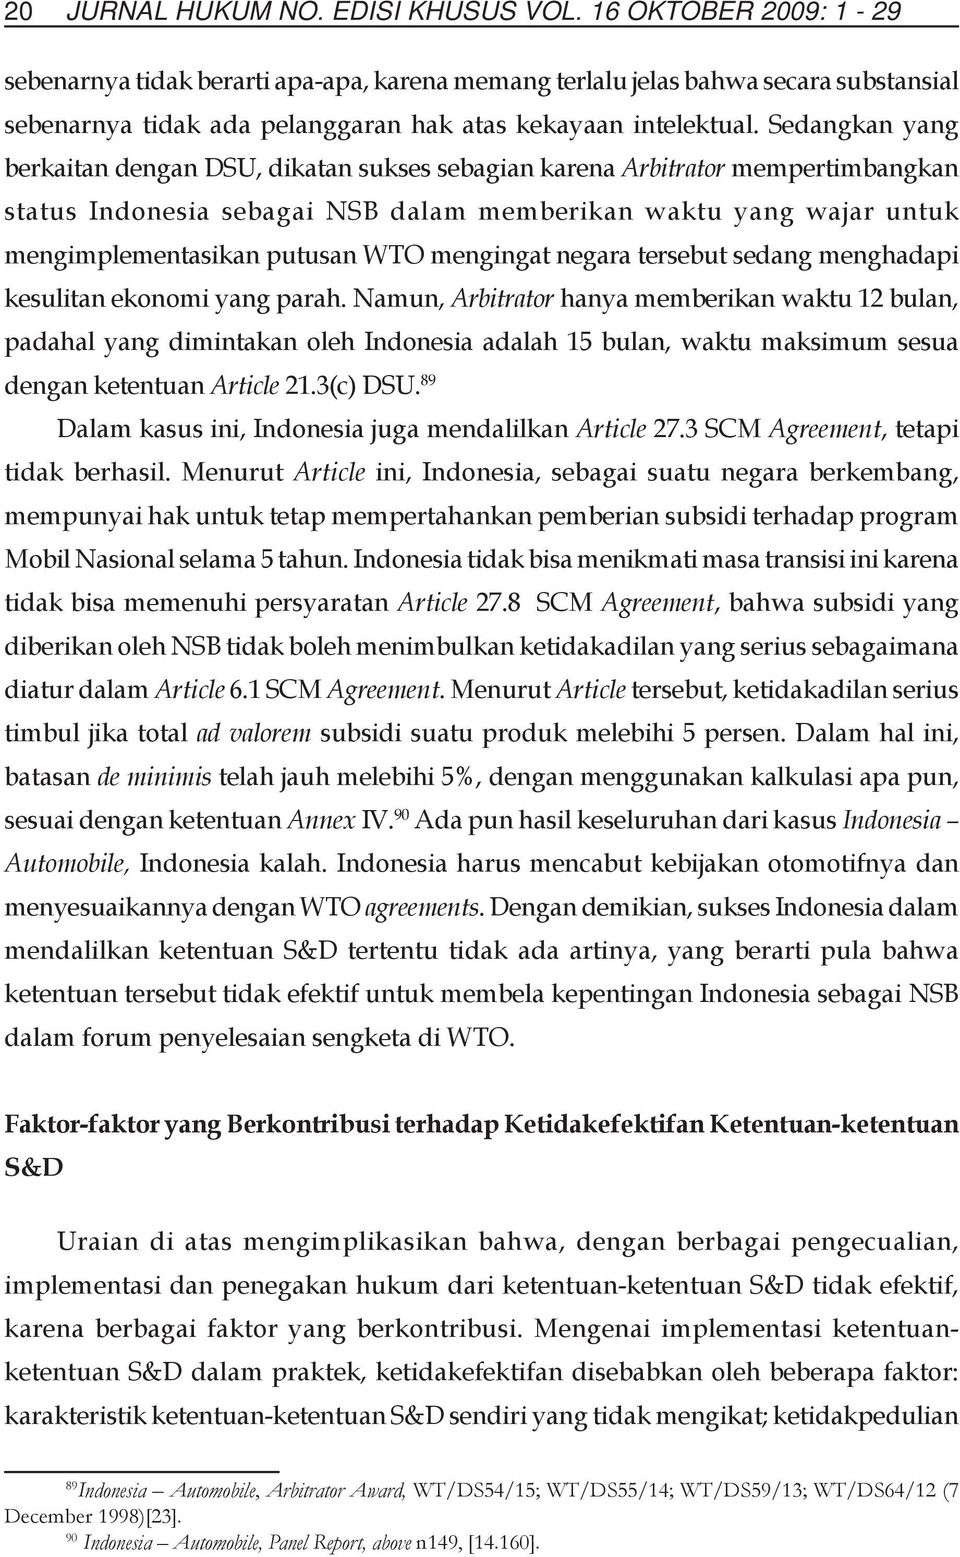 Sedangkan yang berkaitan dengan DSU, dikatan sukses sebagian karena Arbitrator mempertimbangkan status Indonesia sebagai NSB dalam memberikan waktu yang wajar untuk mengimplementasikan putusan WTO